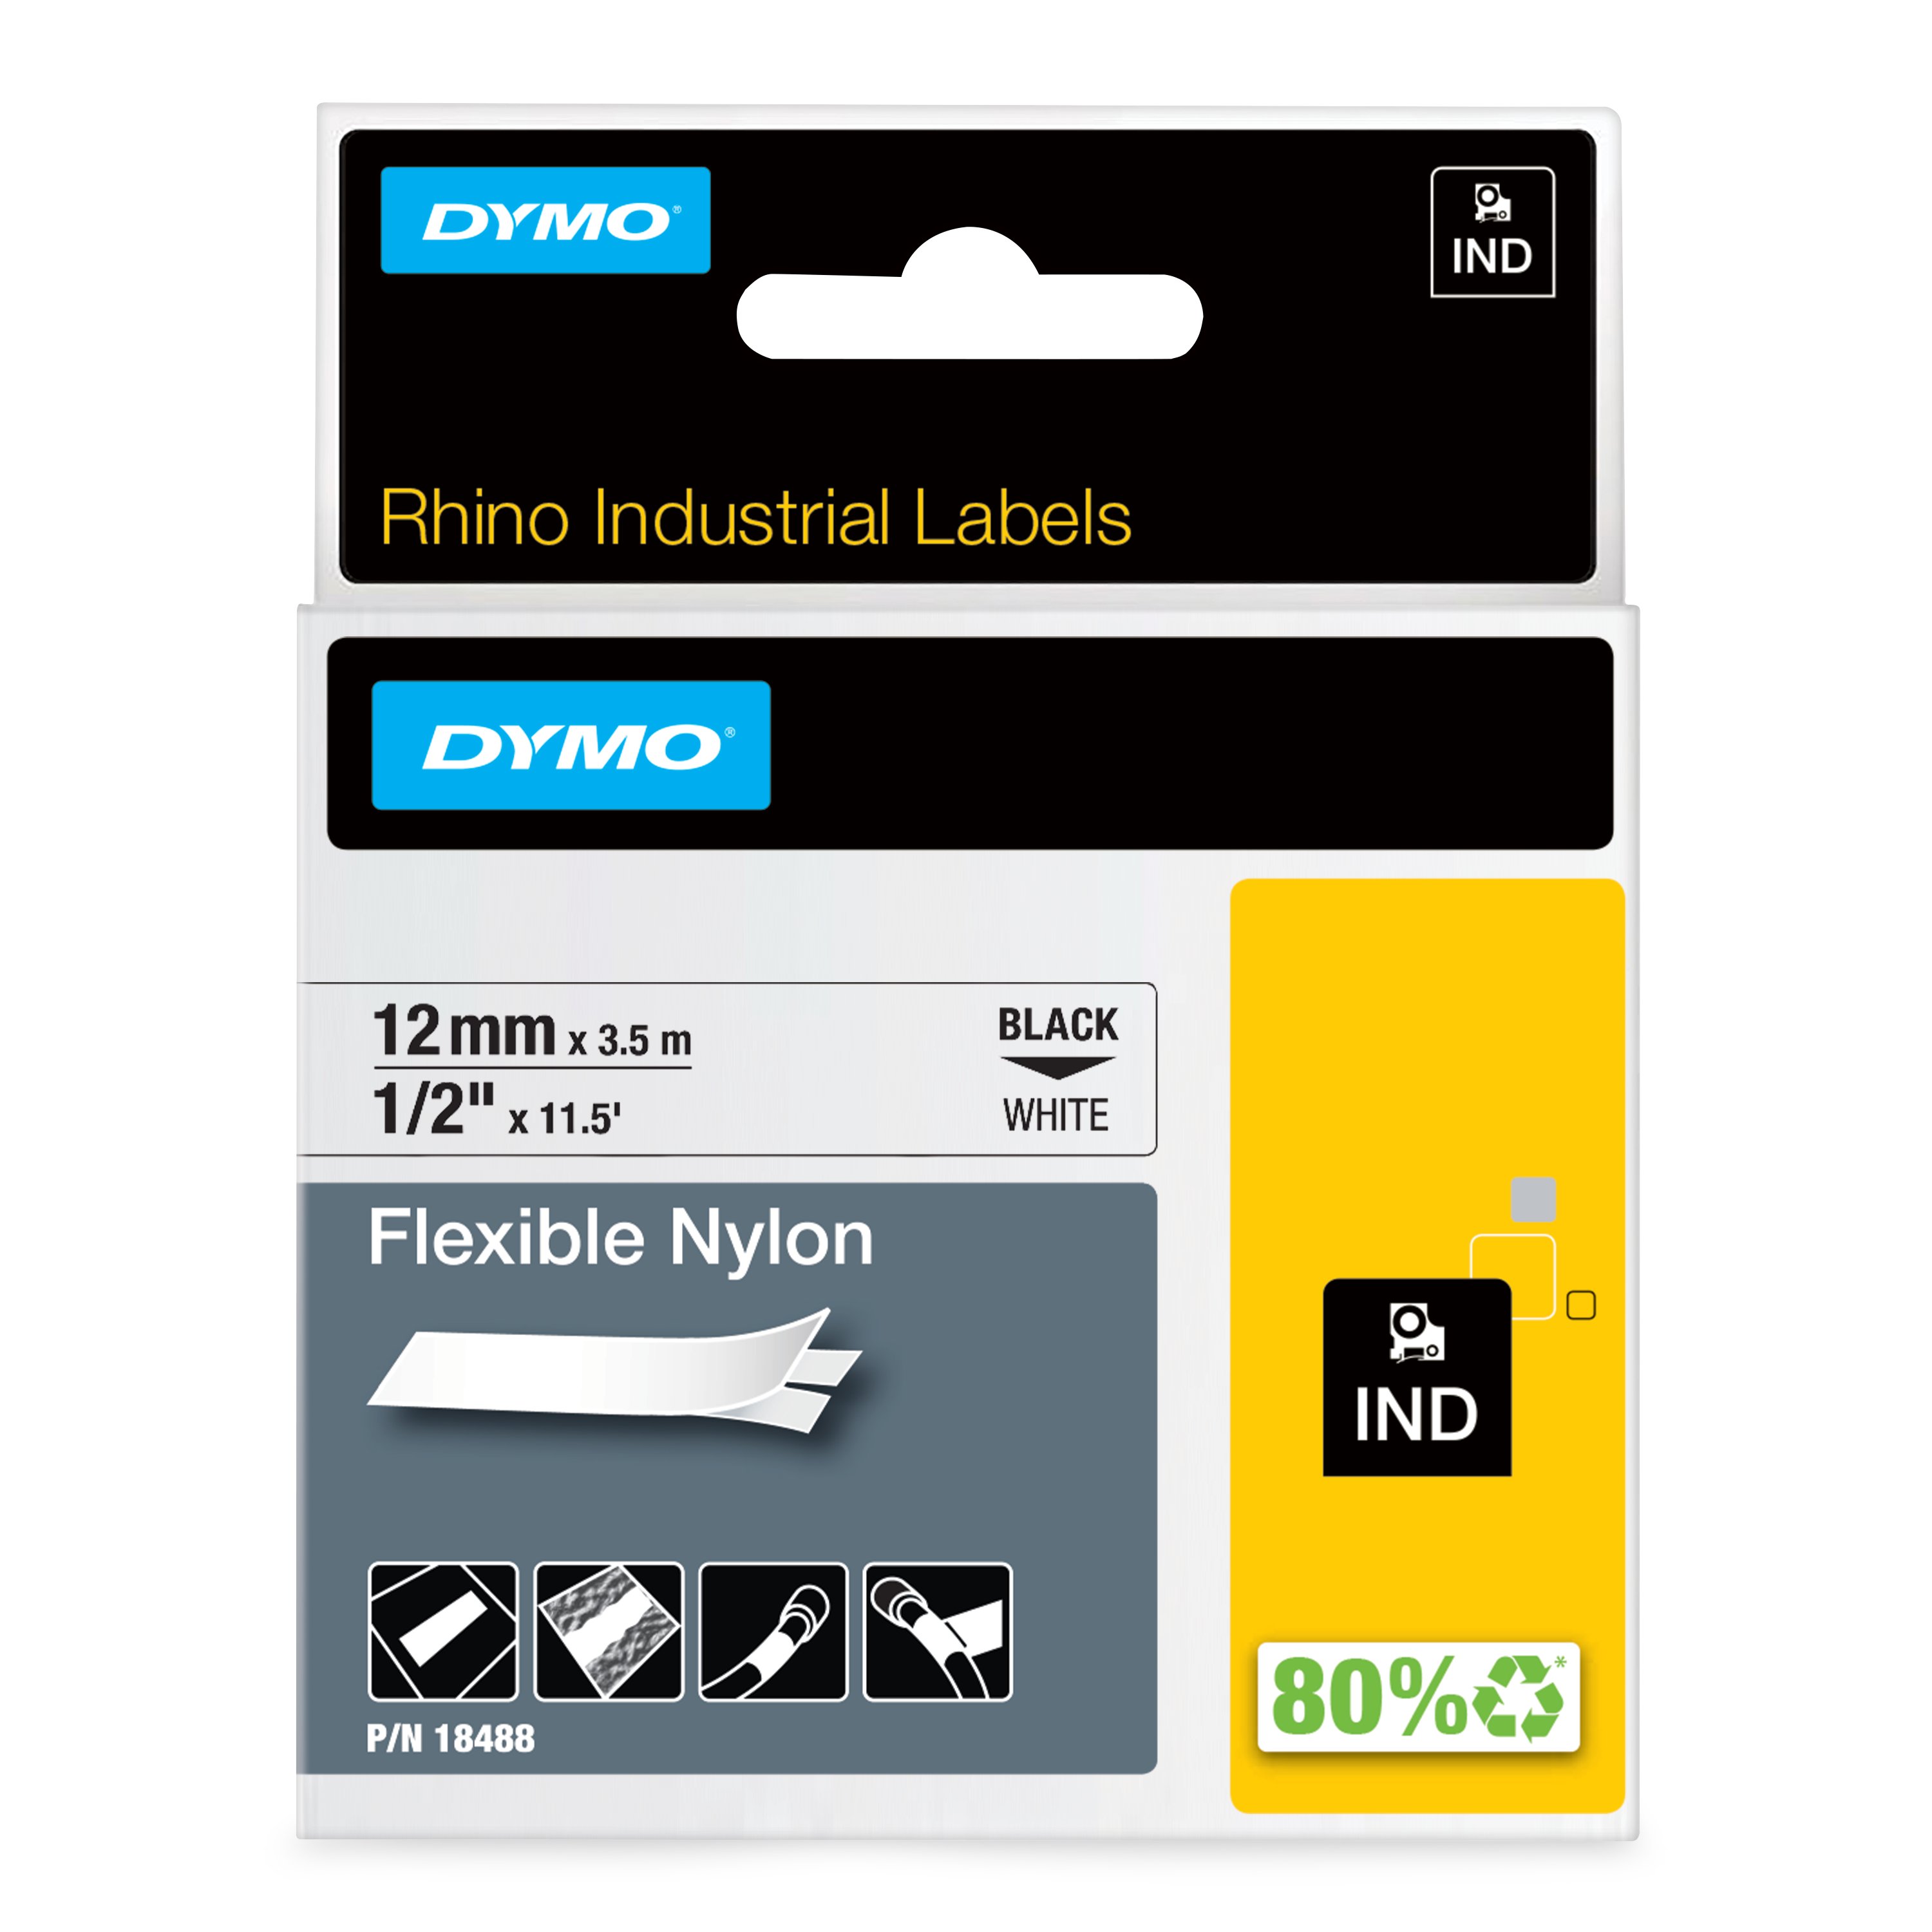 DYMO | Original IND-Schriftband für Rhino | flexibles & reissfestes Nylon | schwarz auf weiß | 12mm x 3,5m